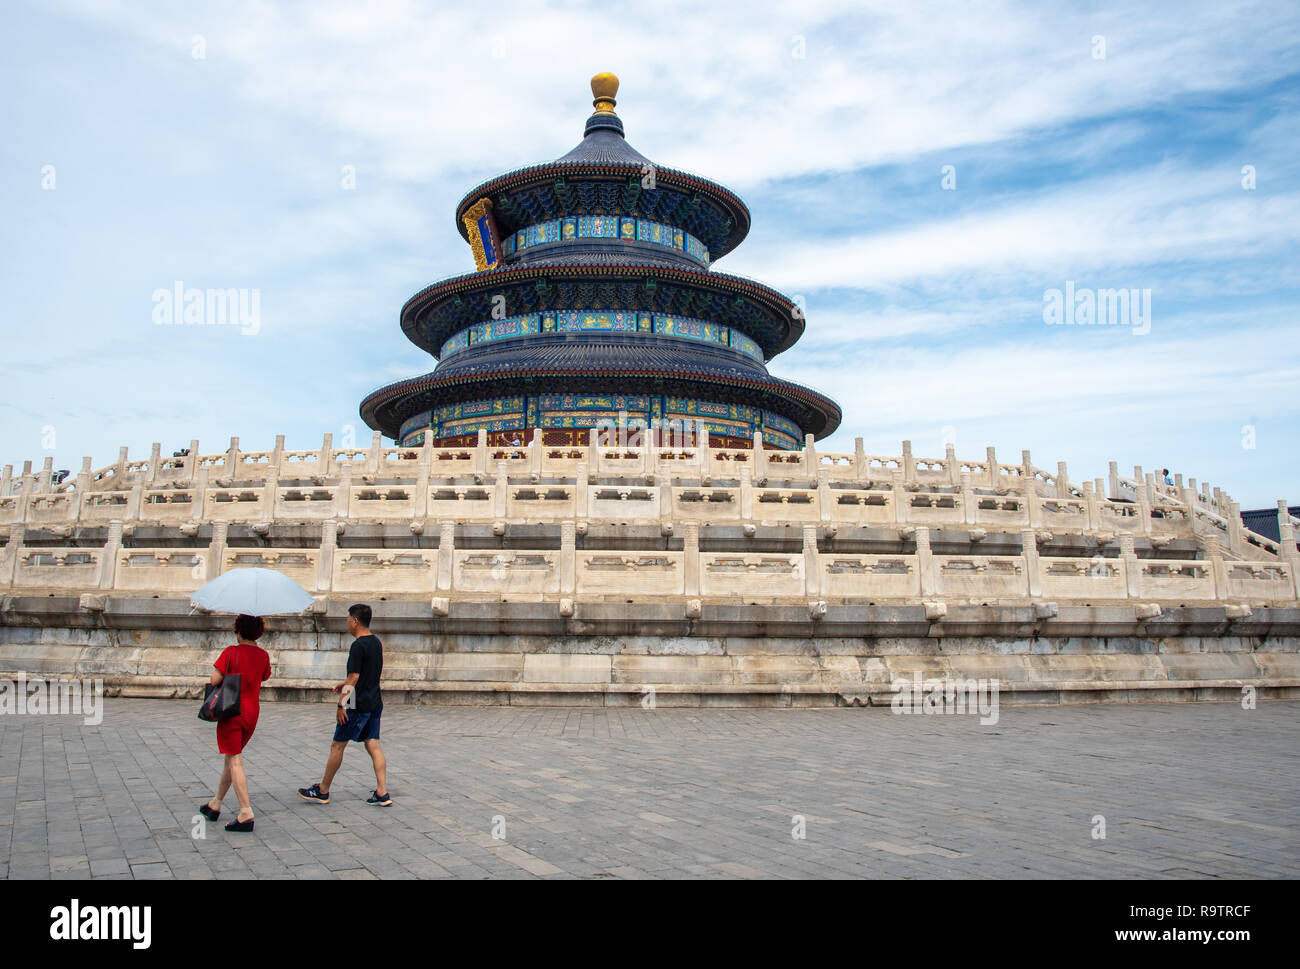 Peking, China - 8. Juni 2018: Panoramablick auf das Bild des berühmten religiösen Wahrzeichen der Himmelstempel in Peking, China in Asien. Stockfoto